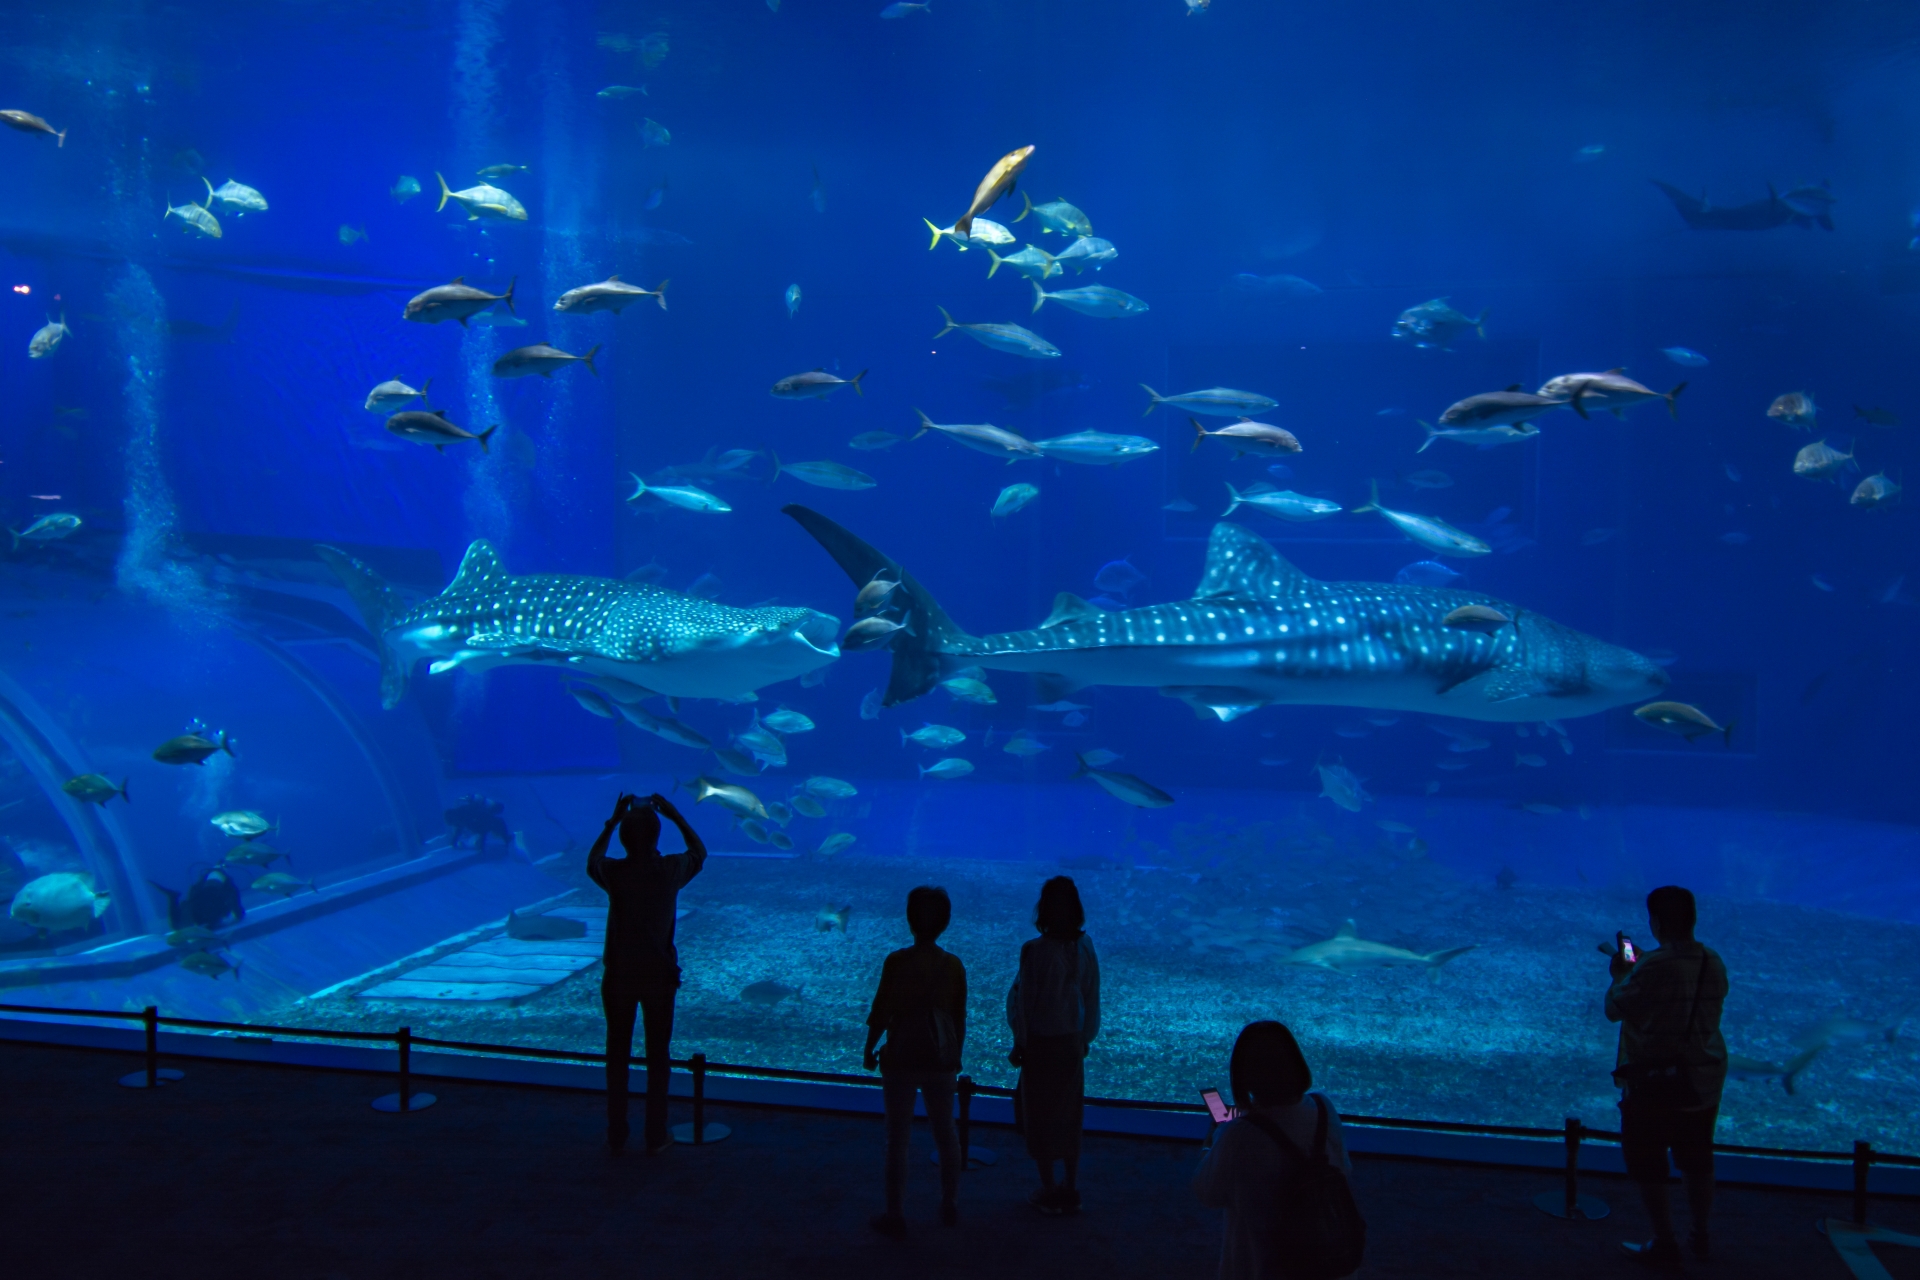 沖縄の「ちゅらうみすいぞくかん」にある巨大な水槽の中でおよぐ「ジンベイザメ」を見る人々の写真